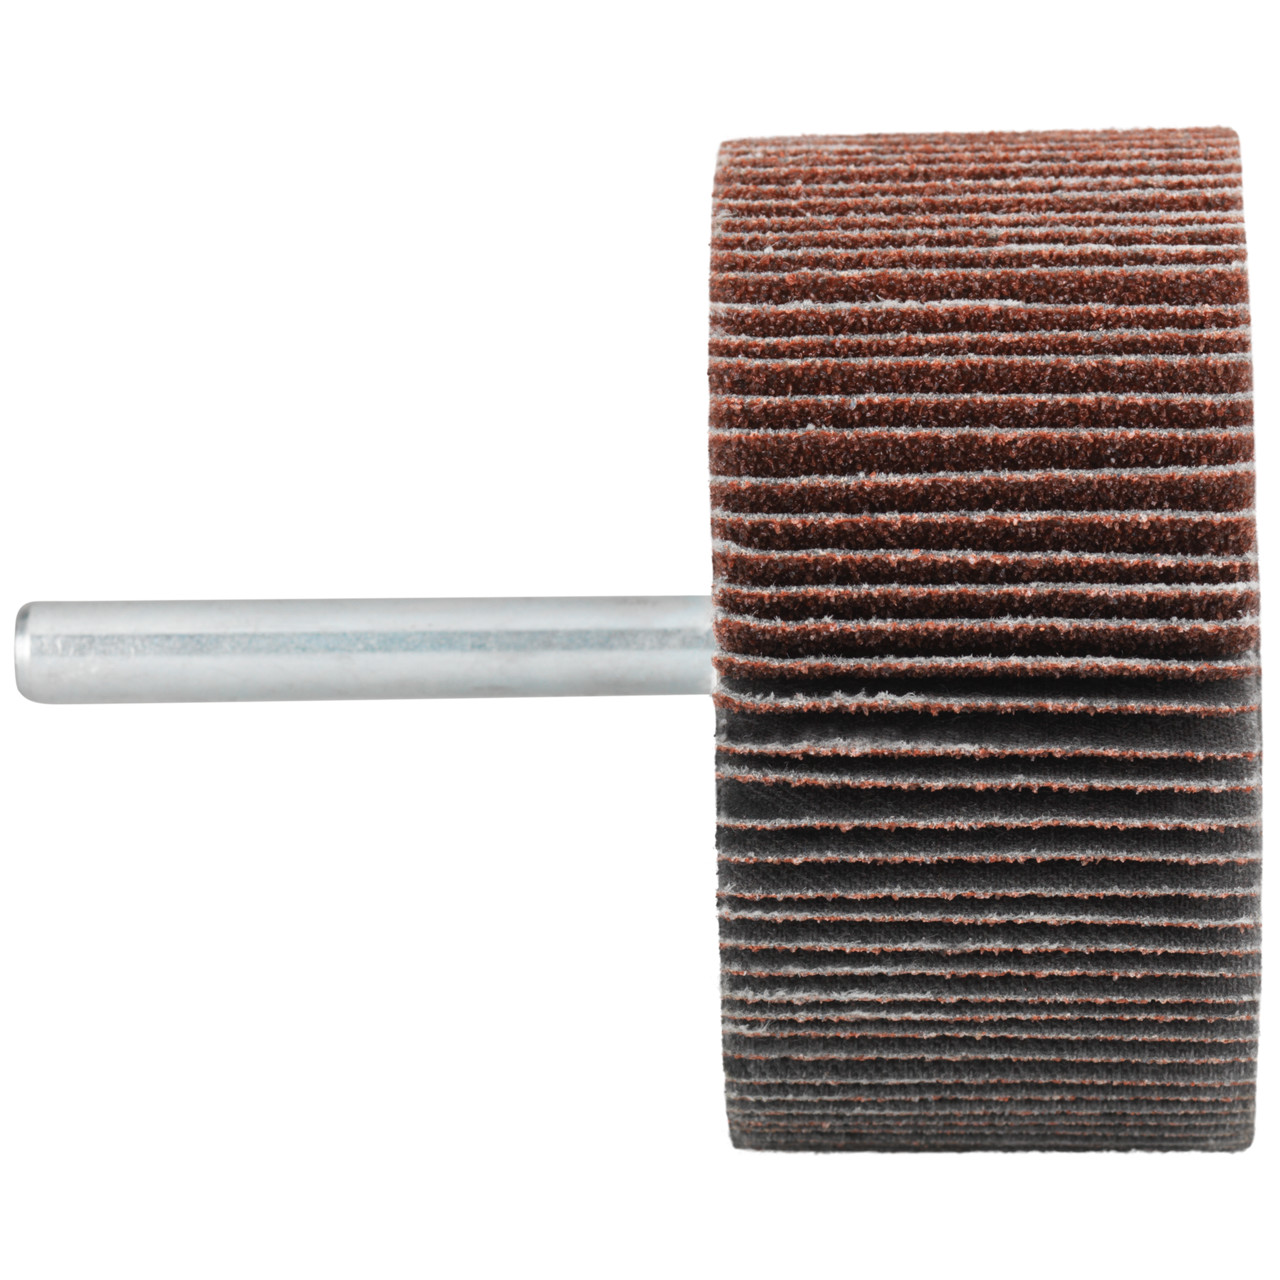 Tyrolit A-P01 C X Pennen DxD 80x50 Voor staal, roestvast staal en non-ferrometalen, P240, vorm: 52LA, Art. 817001